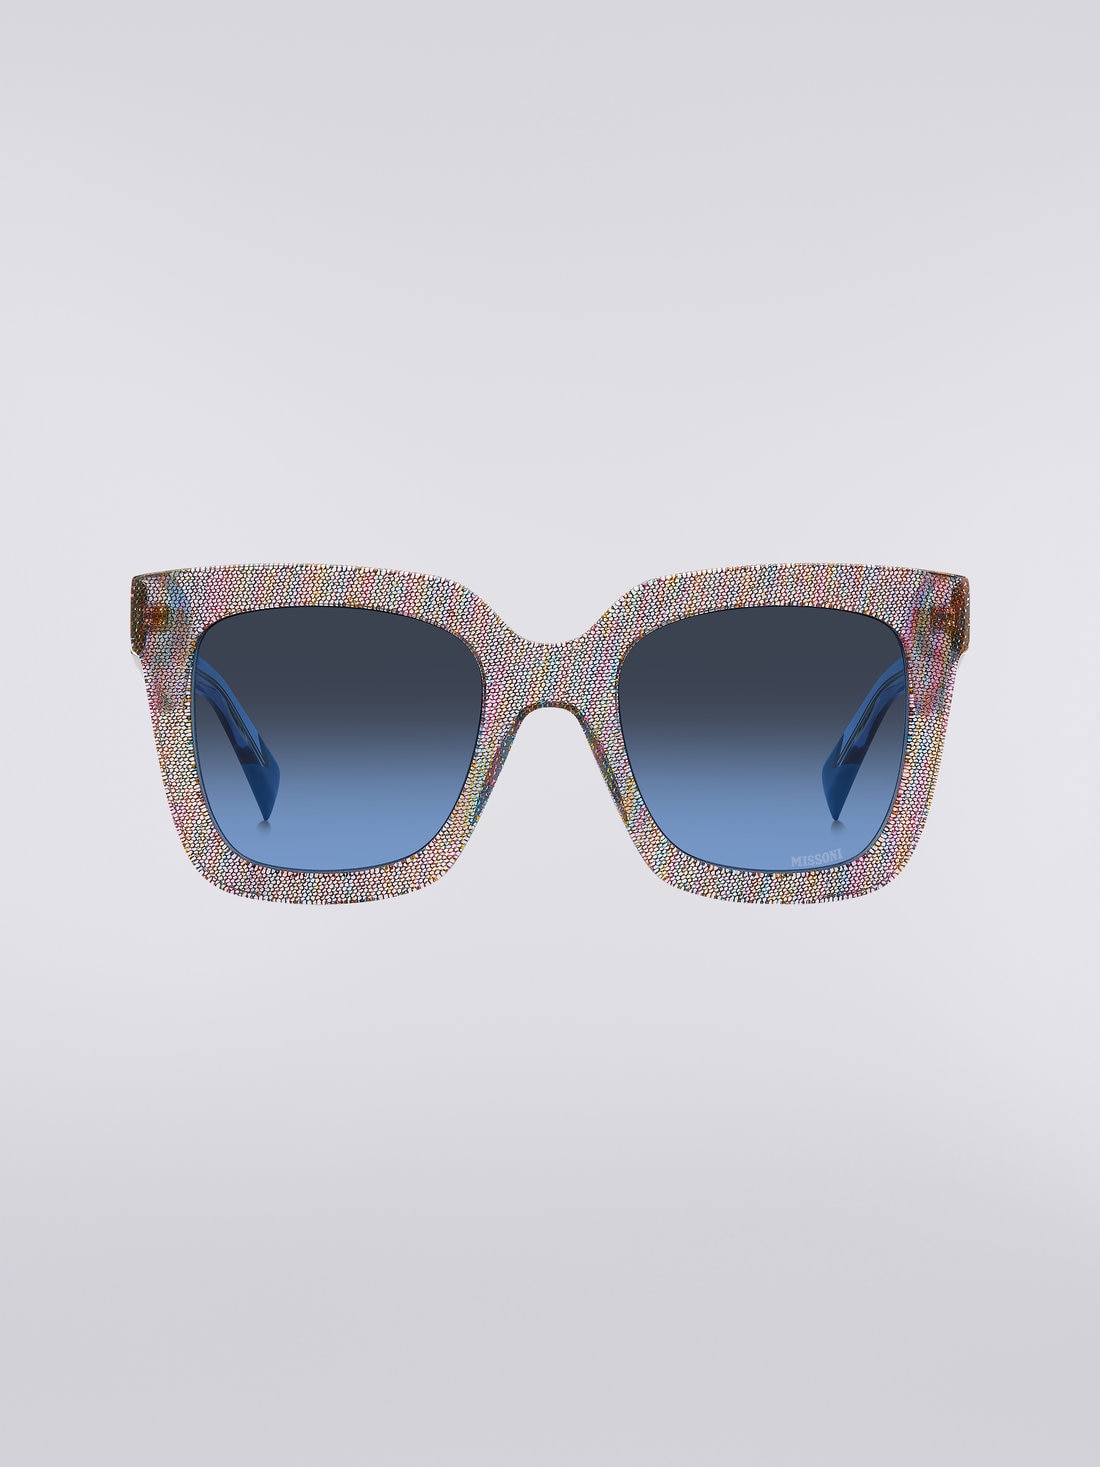 Missoni Dna Acetate Sunglasses, Multicoloured  - 8051575840258 - 0